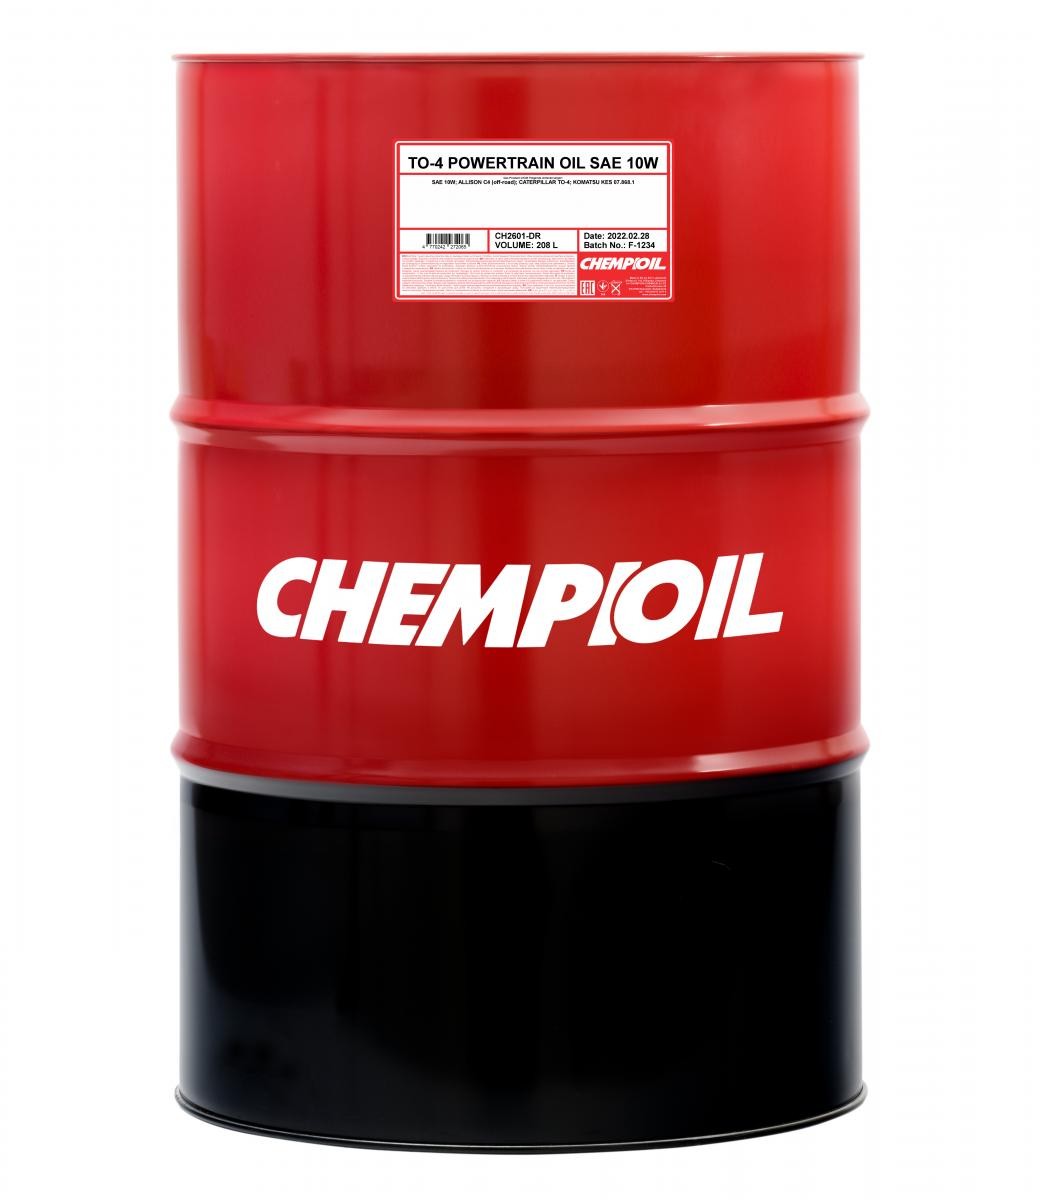 Car oil SAE 10 longlife diesel - CH2601-DR CHEMPIOIL POWERTRAIN OIL, TO-4